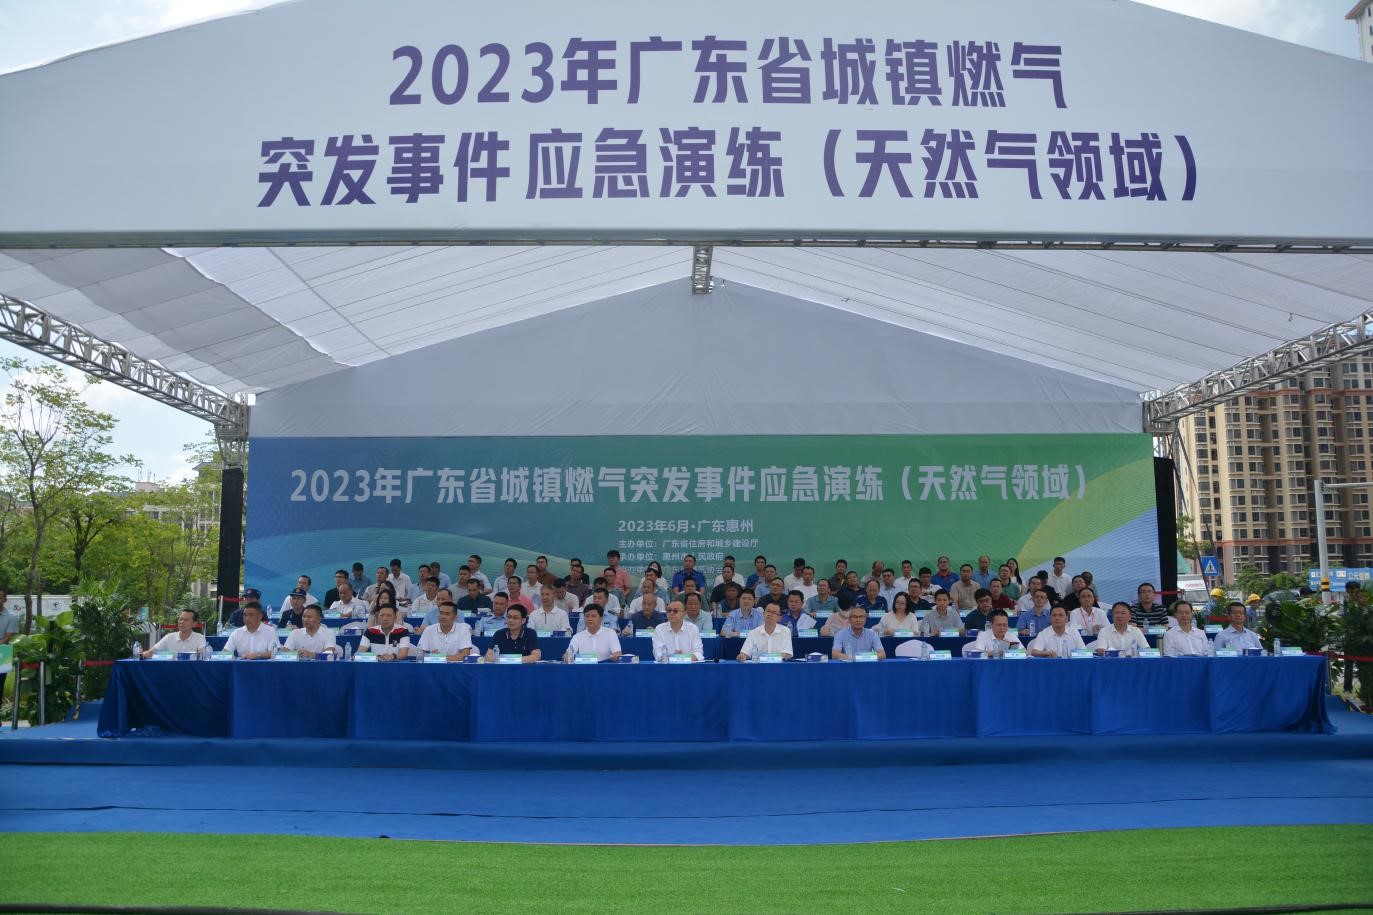 2023年广东省城镇燃气突发事件应急演练（天然气领域）在惠州成功举办图一.jpg